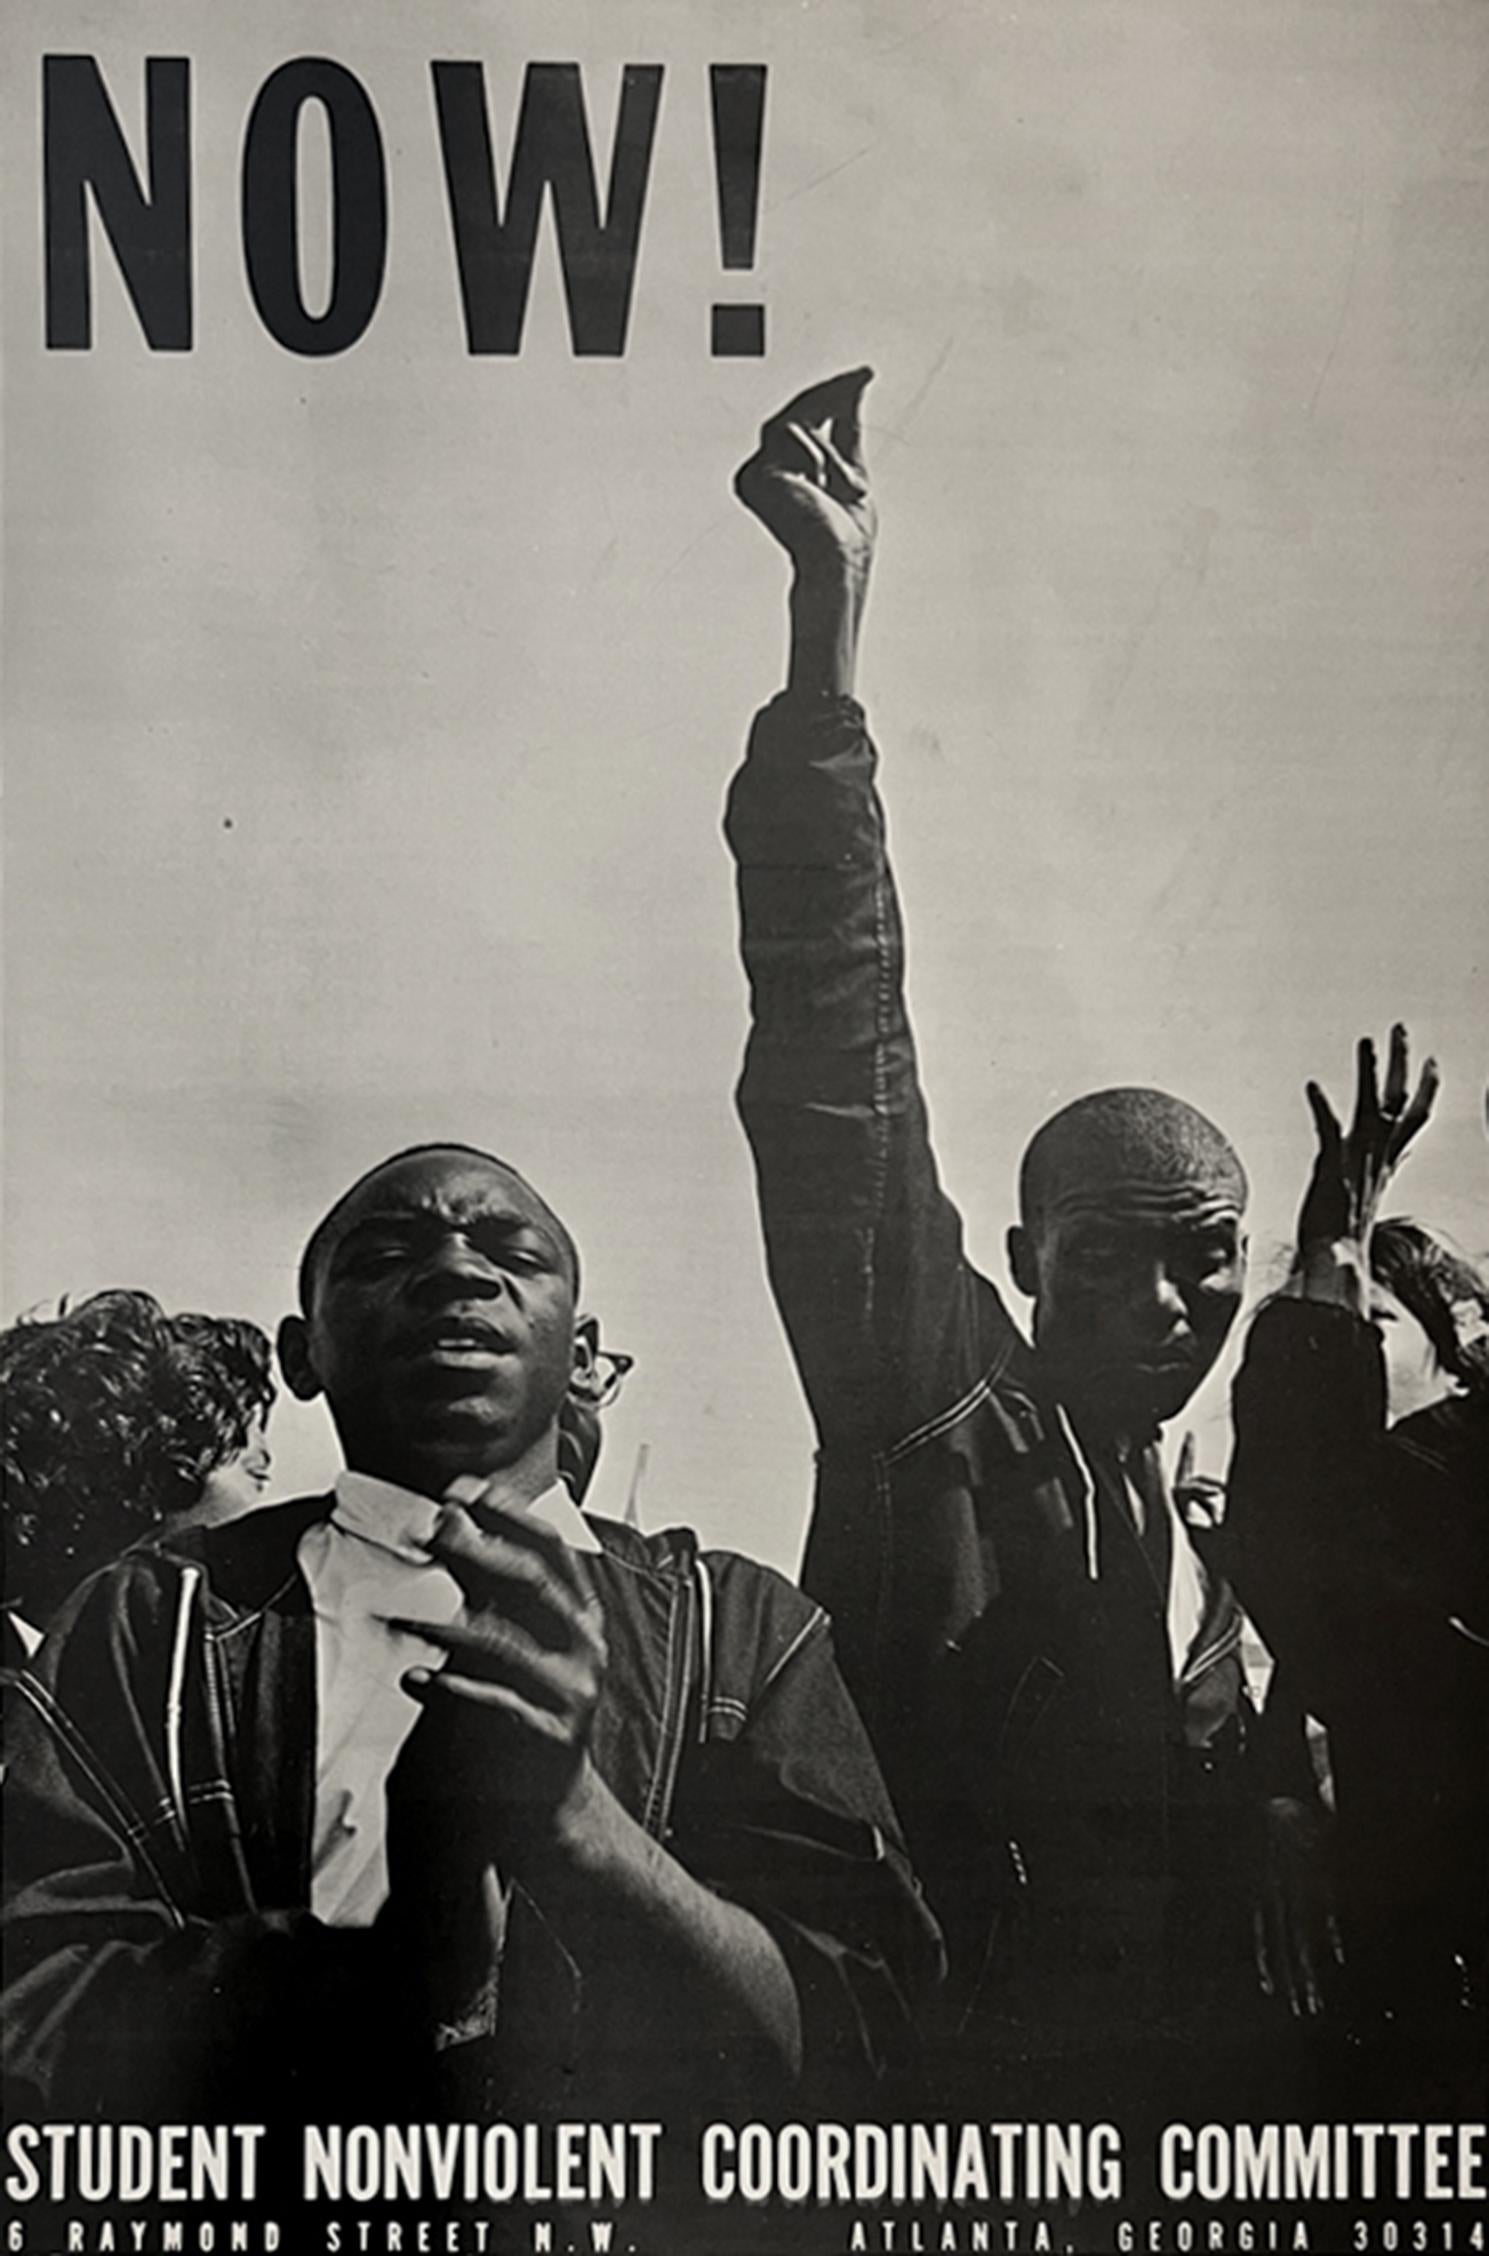 Black and White Photograph Danny Lyon - The March on Washington, 28 août 1963, affiche de la SNCC